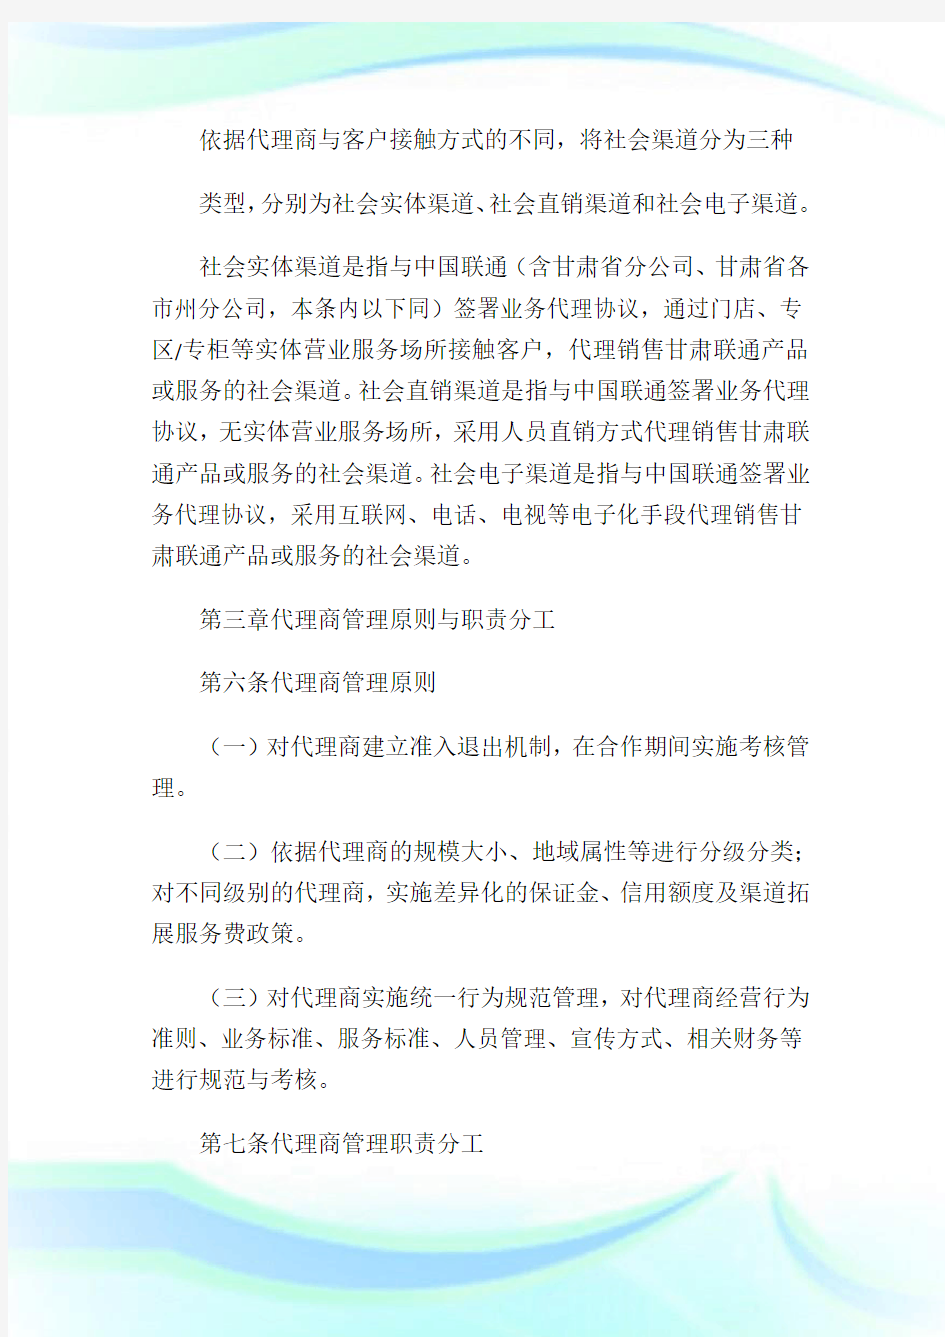 中国联通甘肃省分公司社会营销渠道管理办法(2013修订版)1.doc